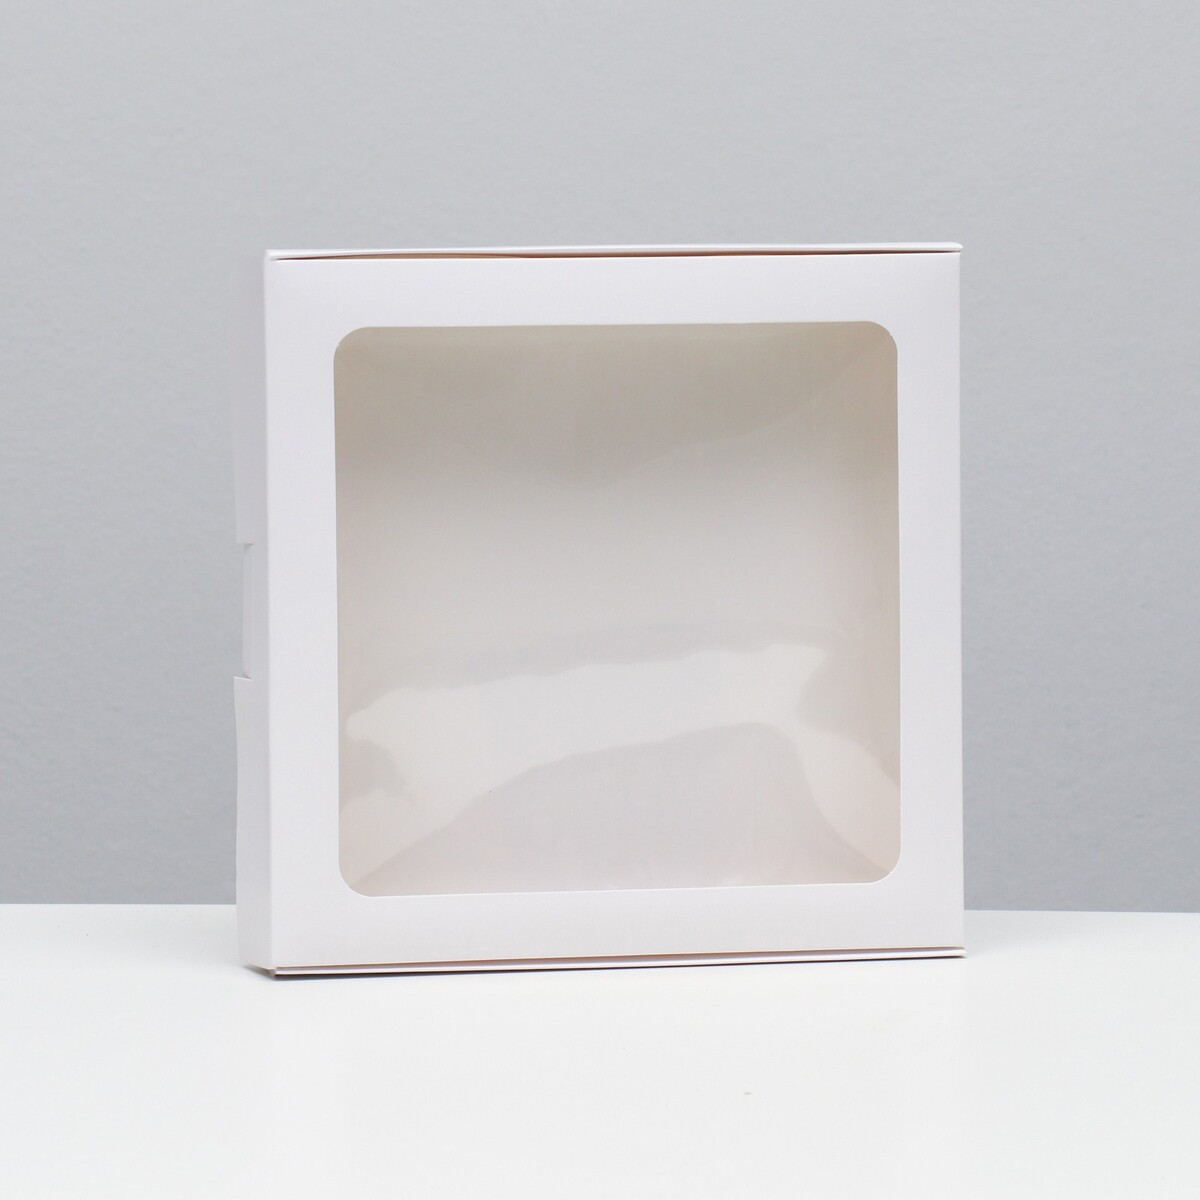 Коробка самосборная, белая, 21 х 21 х 3 см коробка под пироженое белая 17 х 17 х 10 см